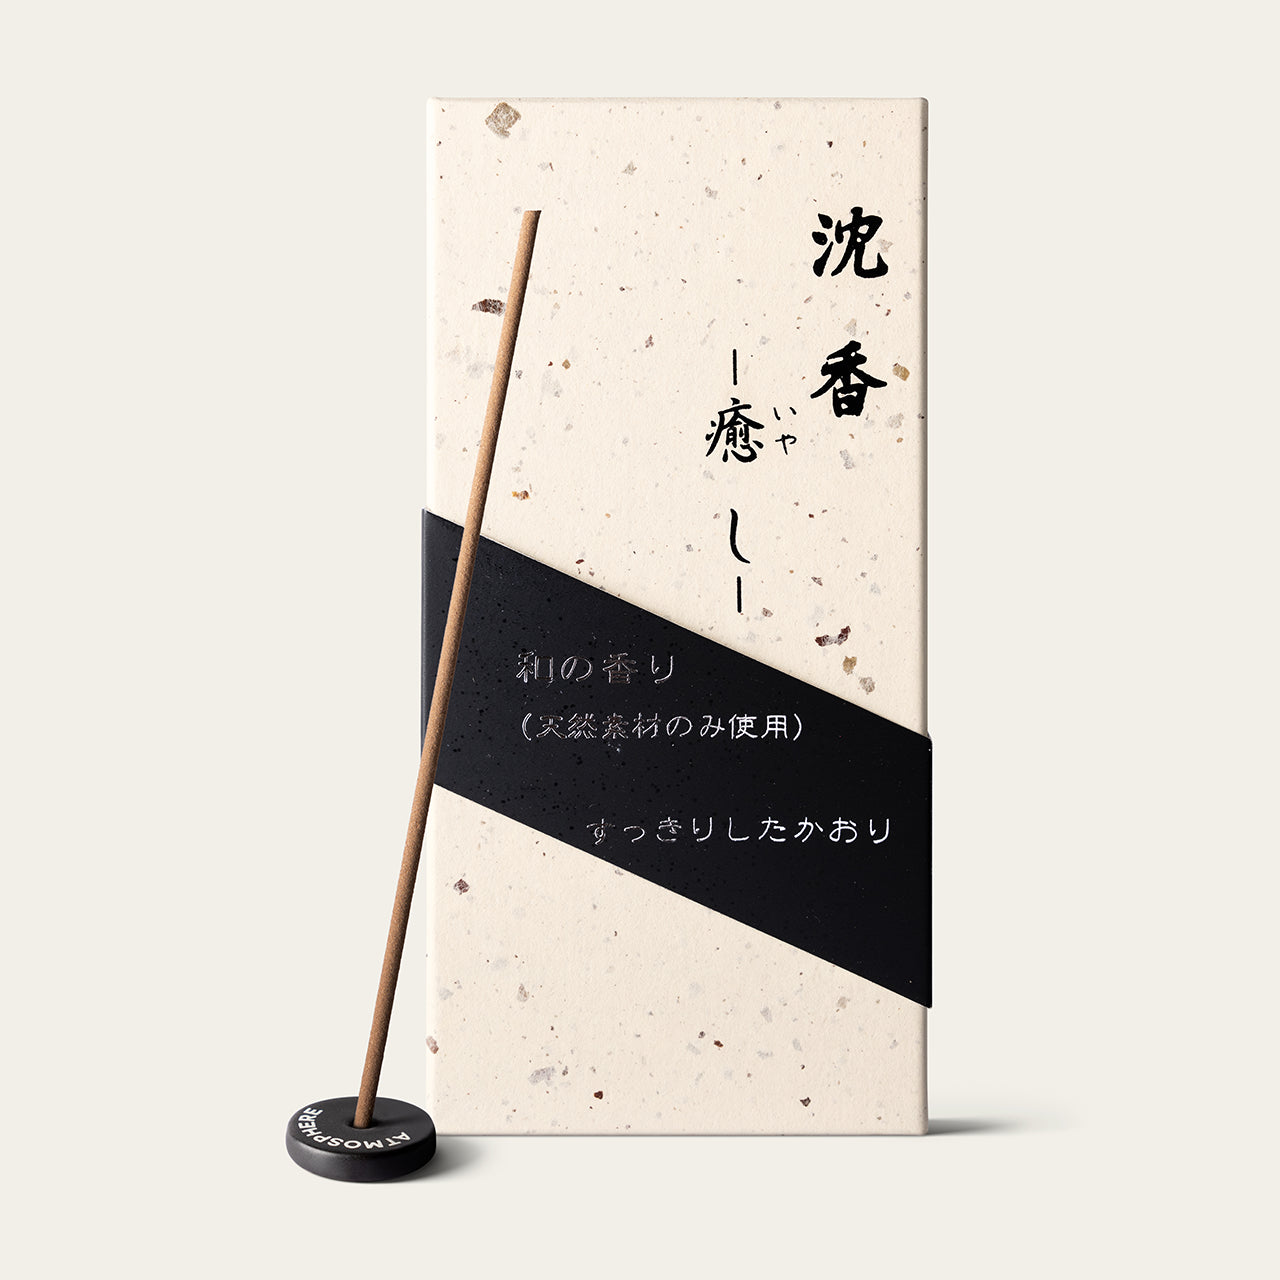 Shorindo Agarwood Healing Jinko Iyashi Japanese incense sticks (150 sticks) with Atmosphere ceramic incense holder